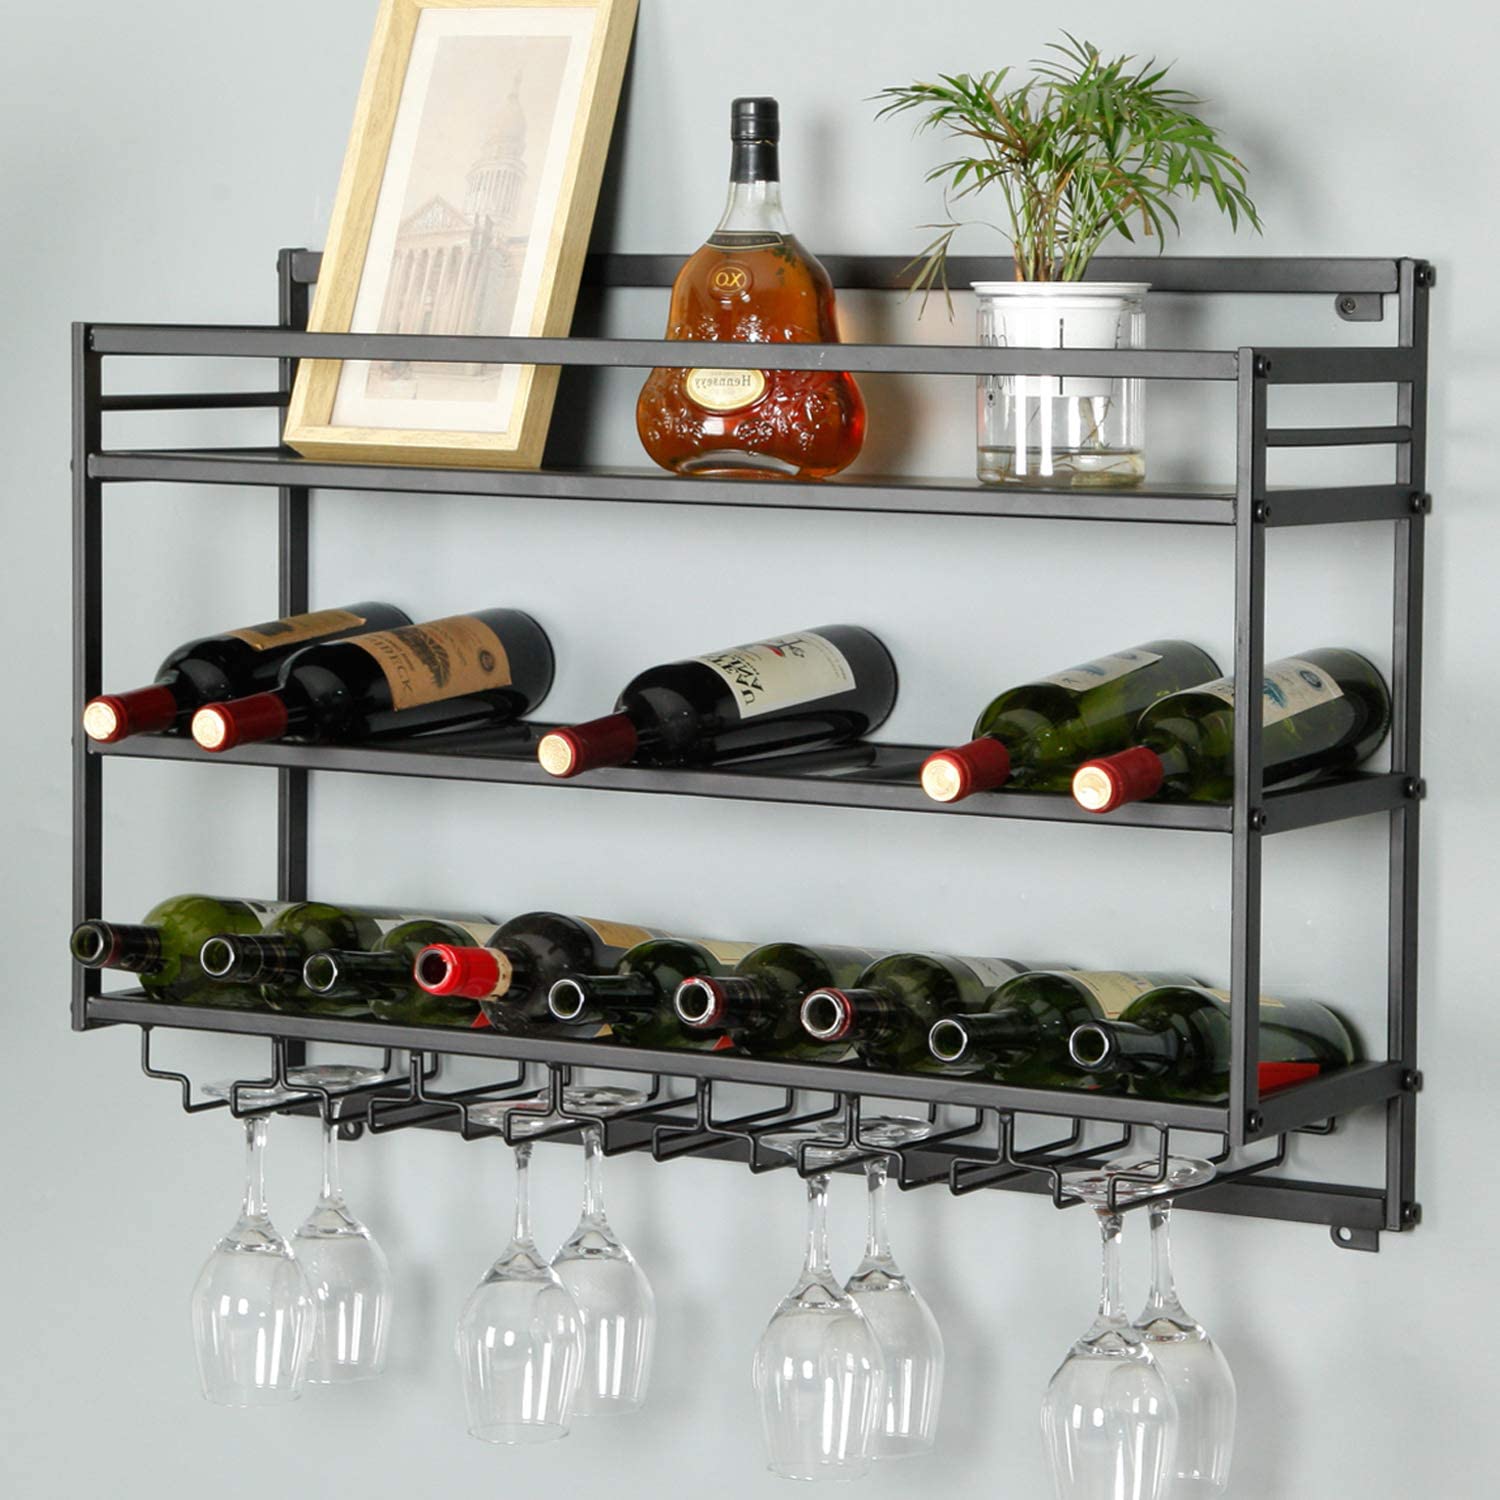 Wall Shelf as Wine Storage